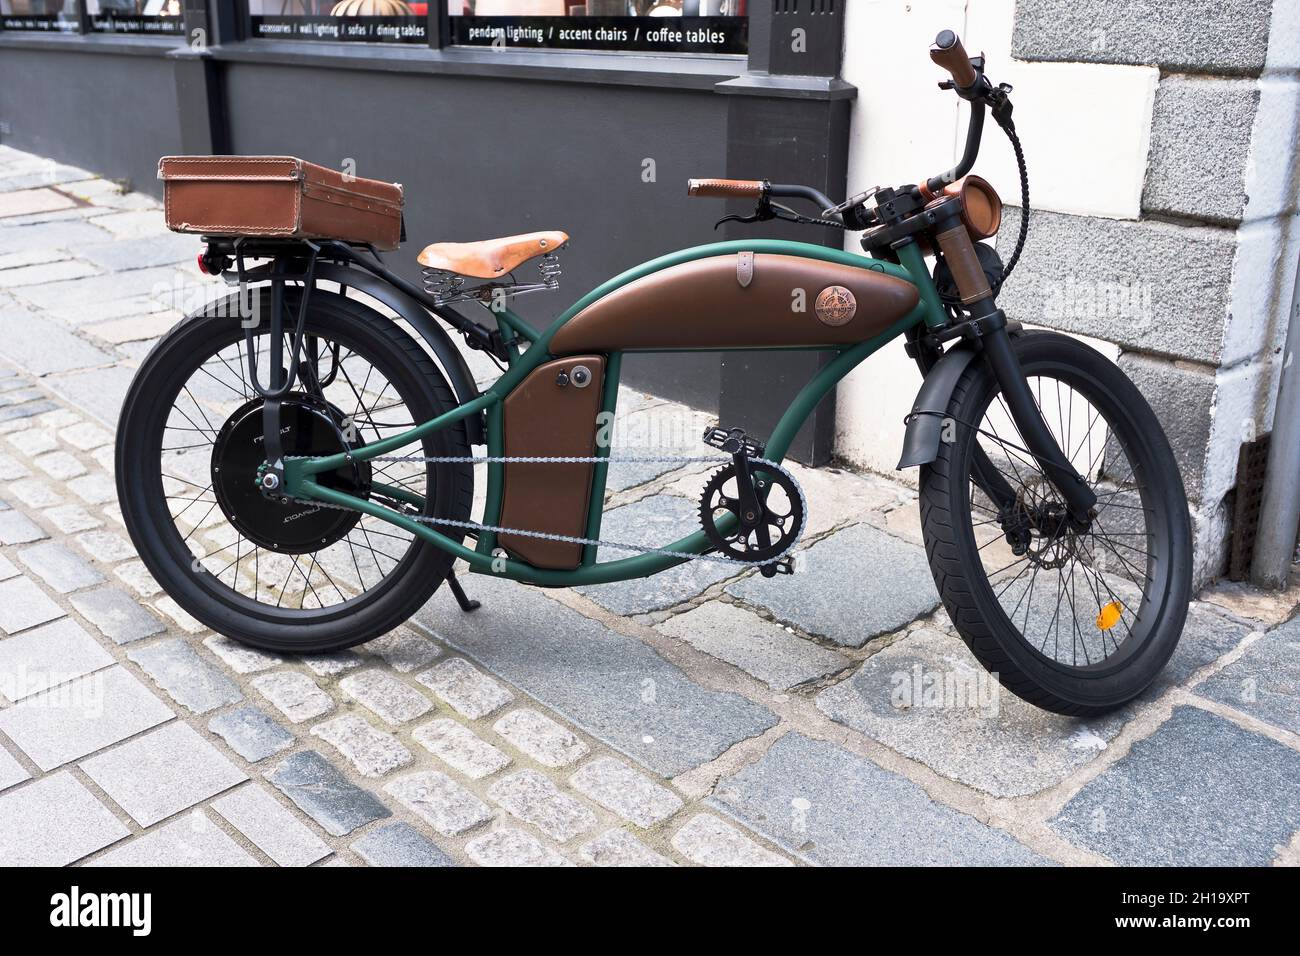 dh Rayvolt Cruzer EBIKE TRANSPORTE Bicicletas bicicleta eléctrica estilo retro bicicletas antiguas Foto de stock